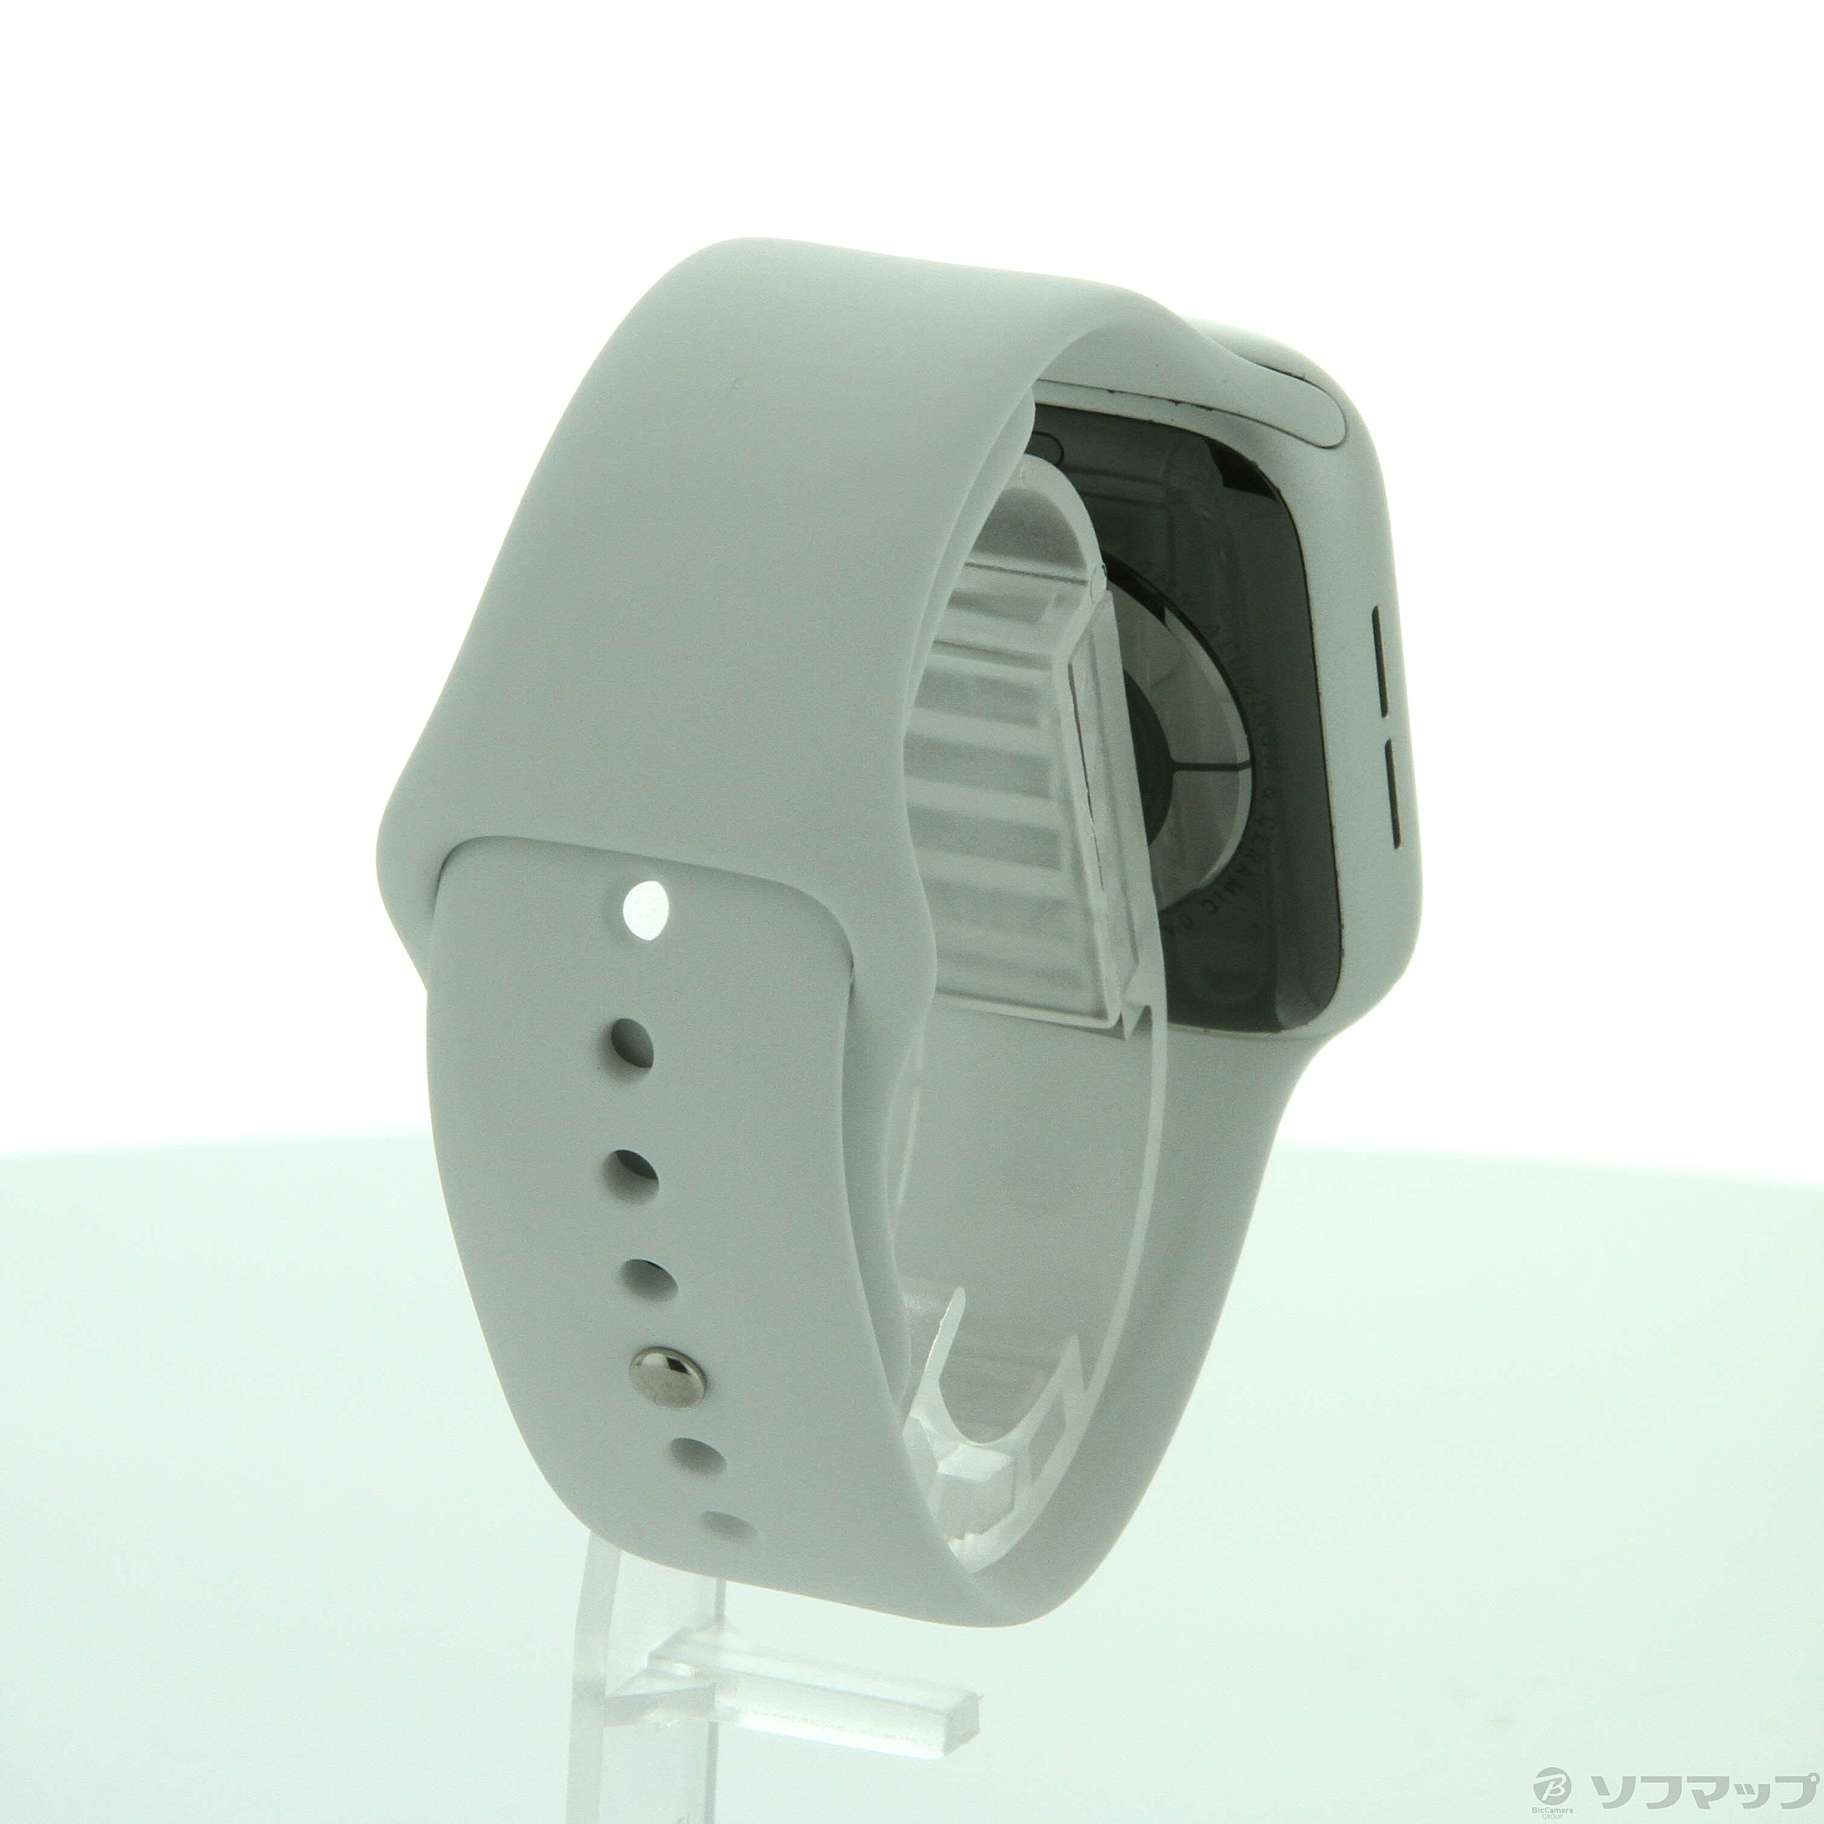 中古】Apple Watch Series 5 GPS 44mm シルバーアルミニウムケース ...